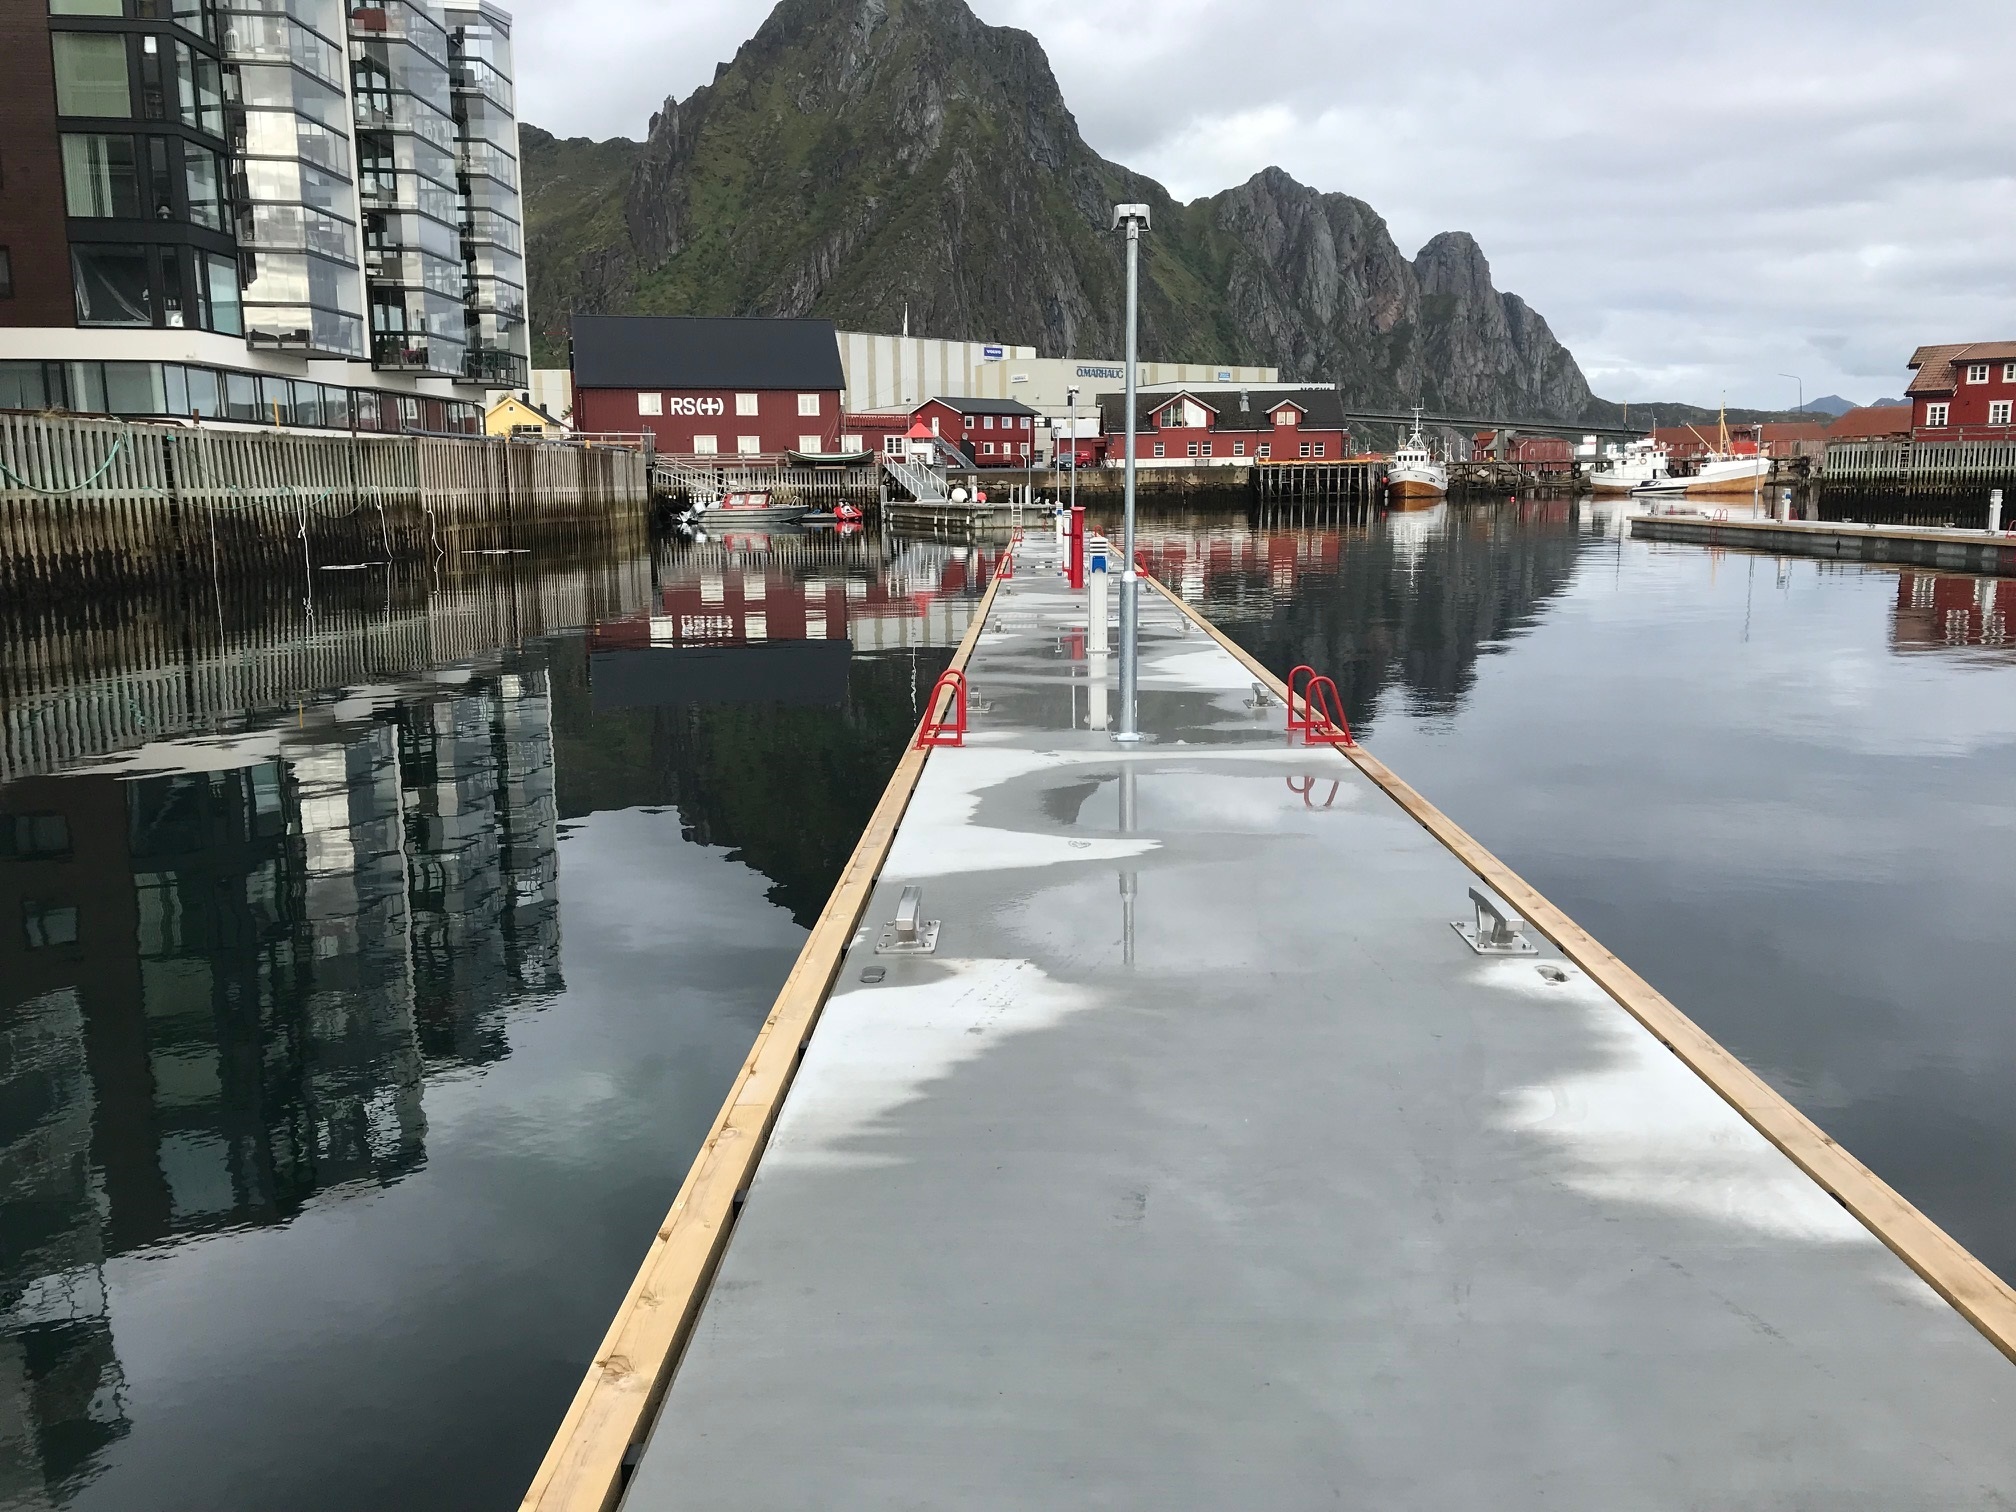 https://marinasolutions.no/uploads/Svolvær-marina-solutions-bryggeanlegg.jpg